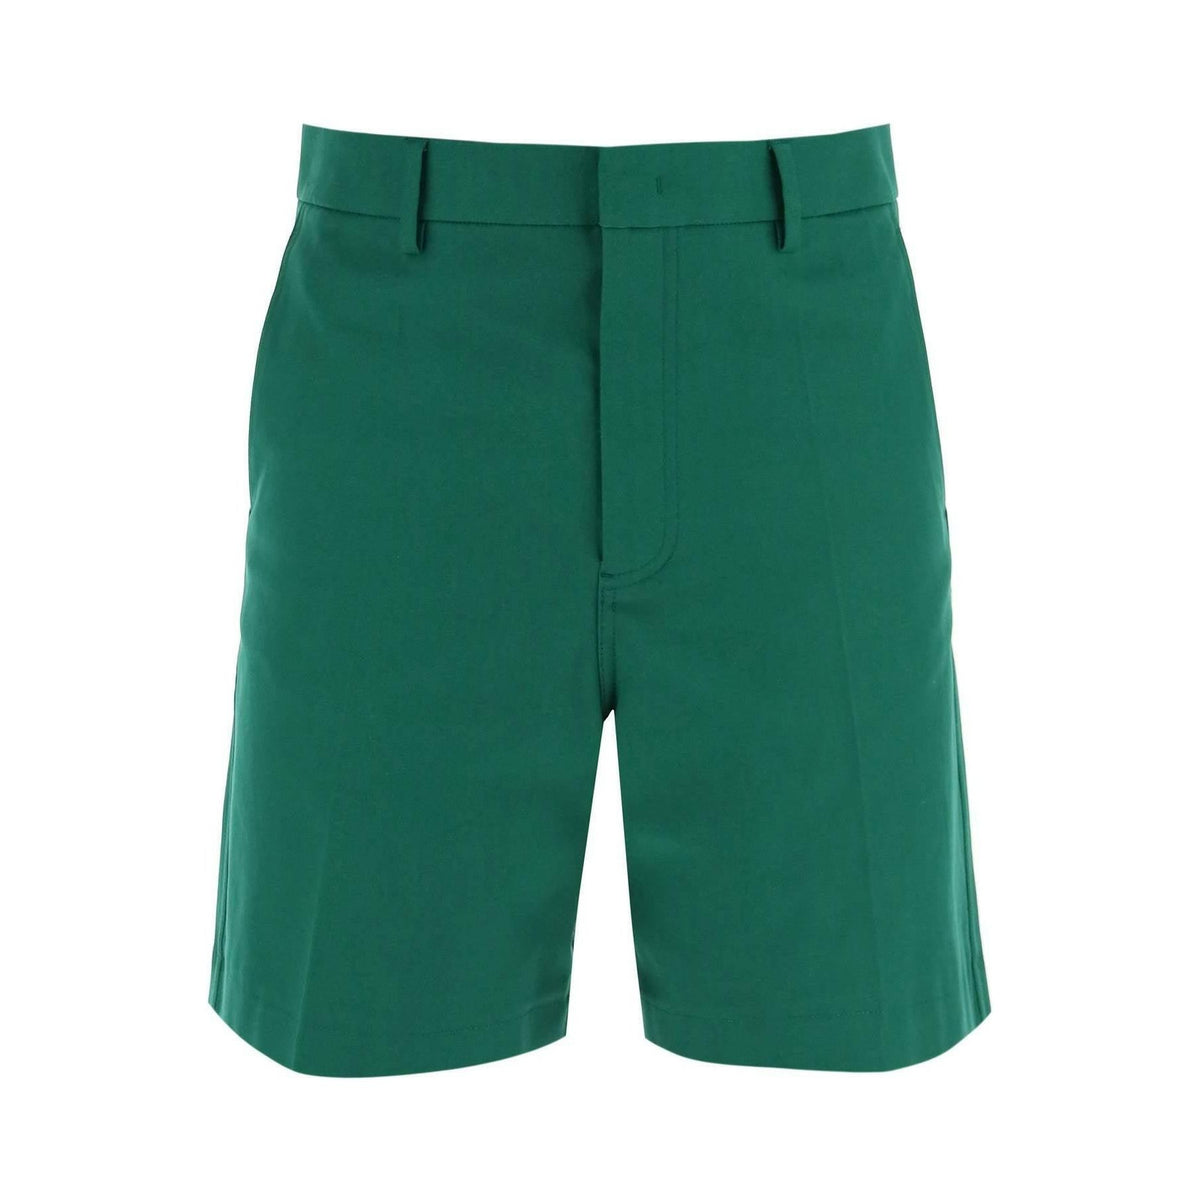 Basic Green Stretch Cotton Canvas Shorts VALENTINO GARAVANI JOHN JULIA.